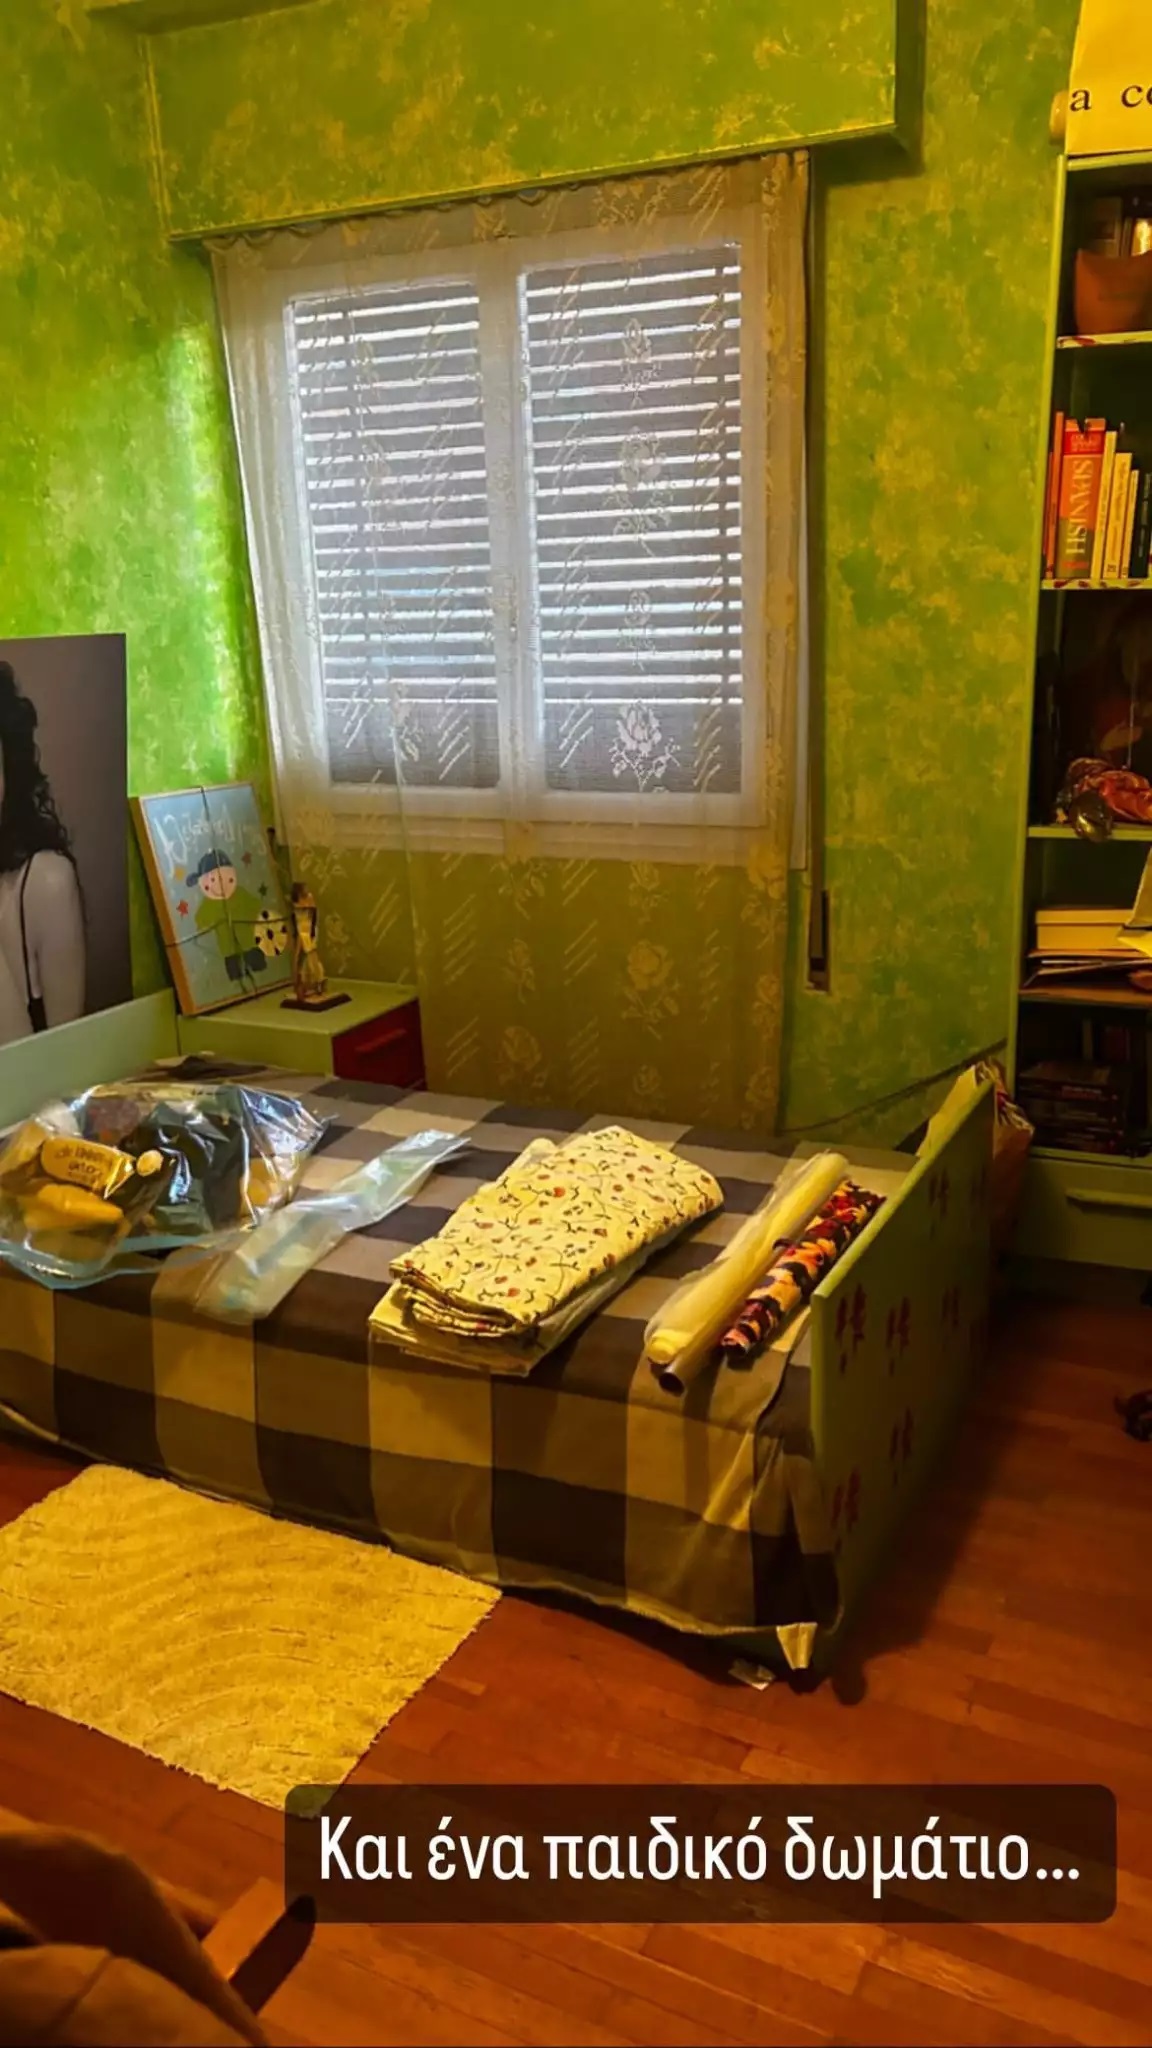 Μαρία Σολωμού: Δημοσίευσε φωτογραφίες από το παρελθόν και το παιδικό της δωμάτιο